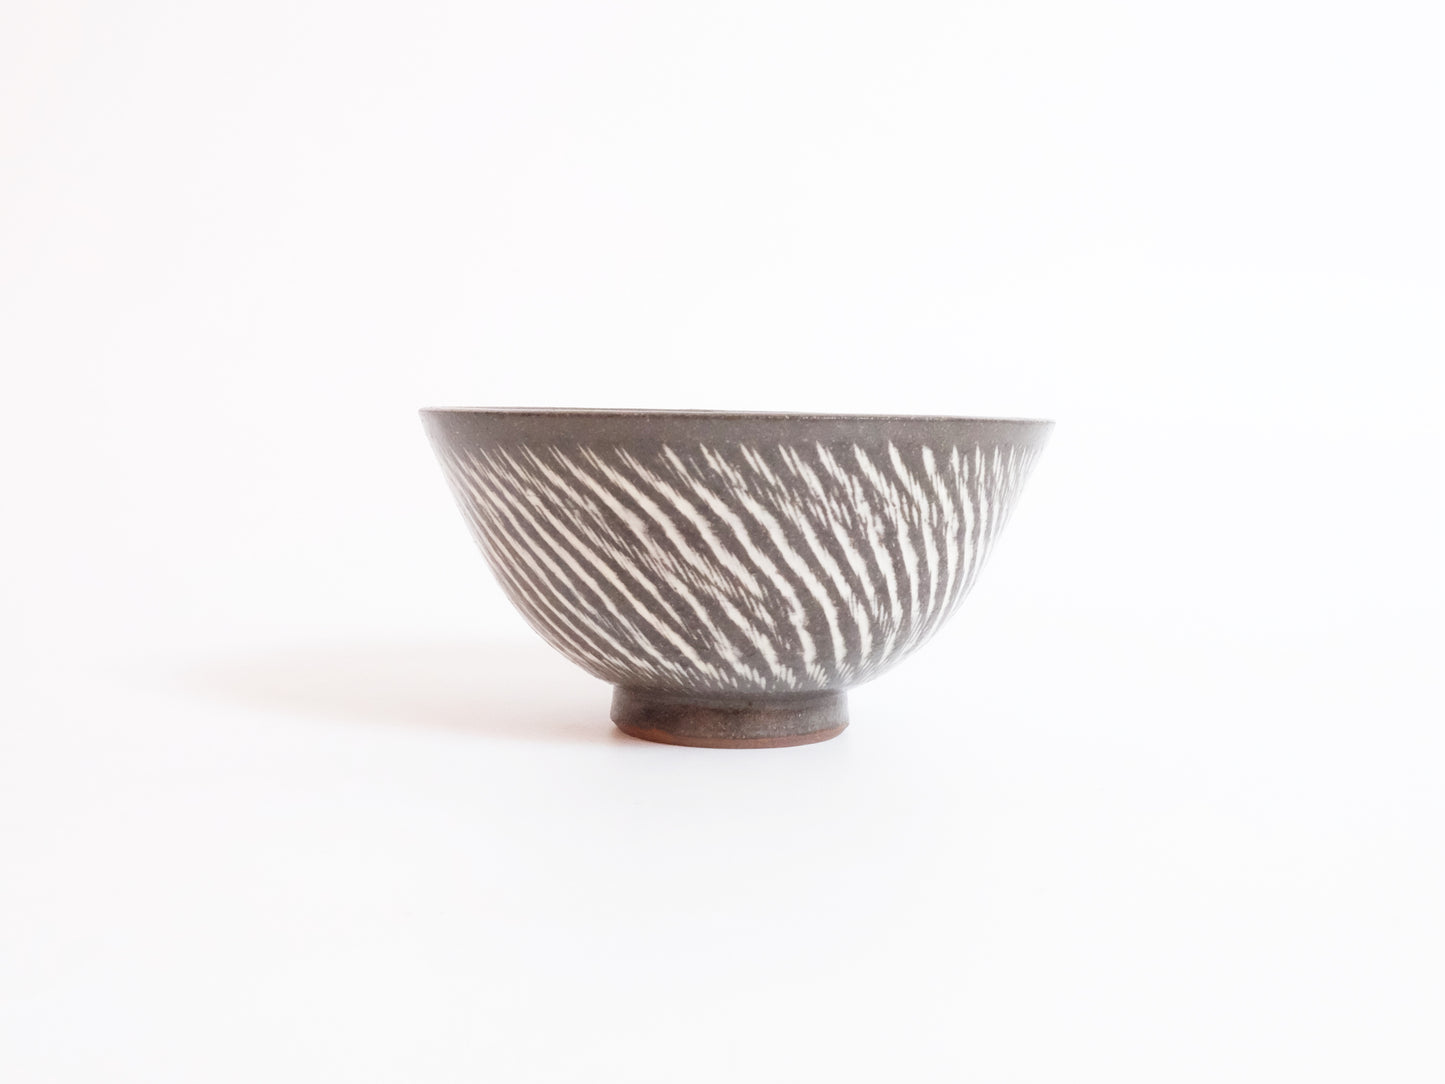 
                  
                    Kasama Chisel Patterned Rice Bowl by Hiroshi Otsu
                  
                